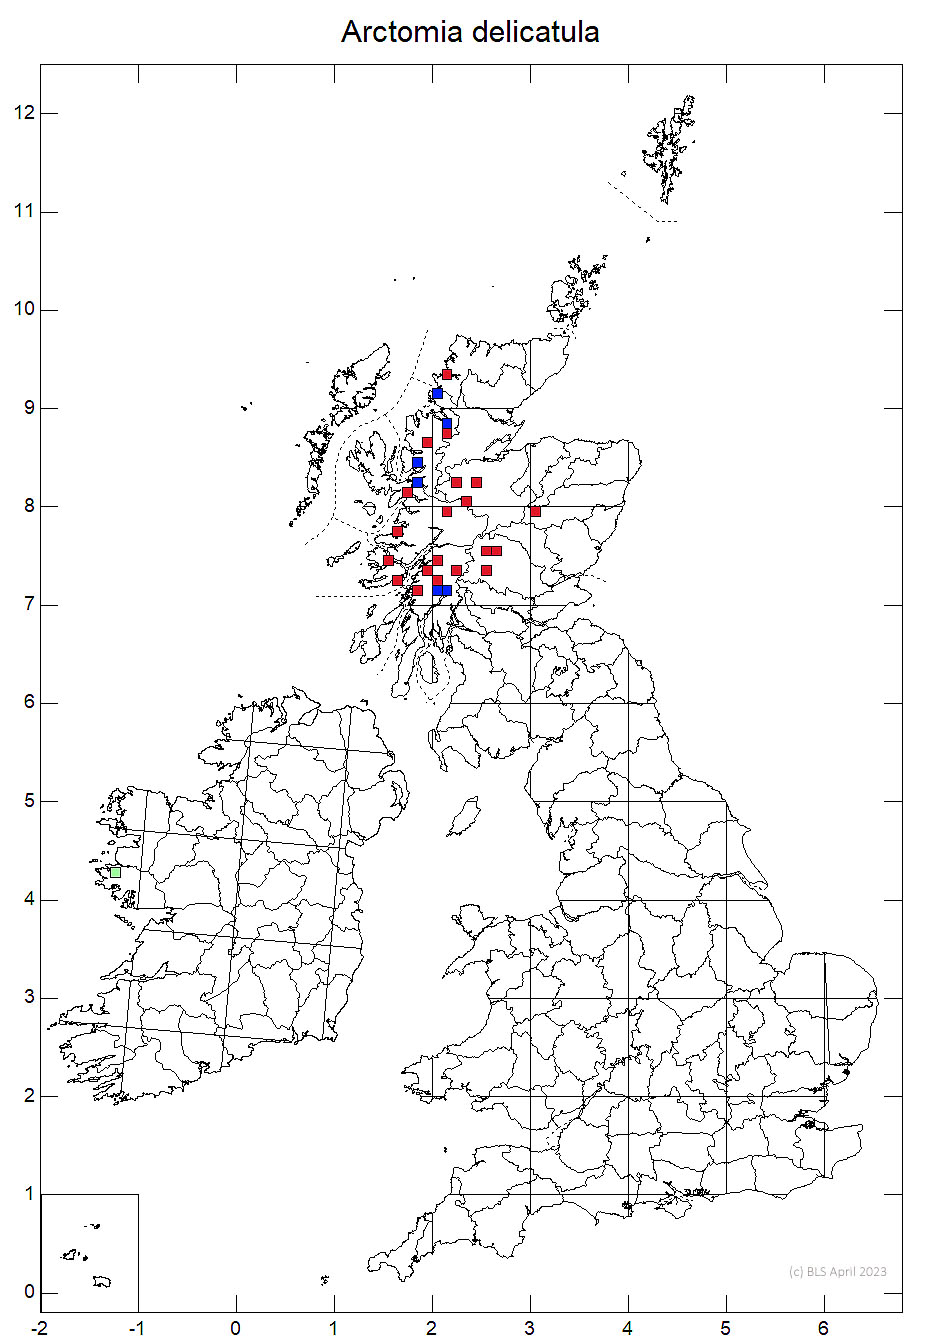 Arctomia delicatula 10km sq distribution map